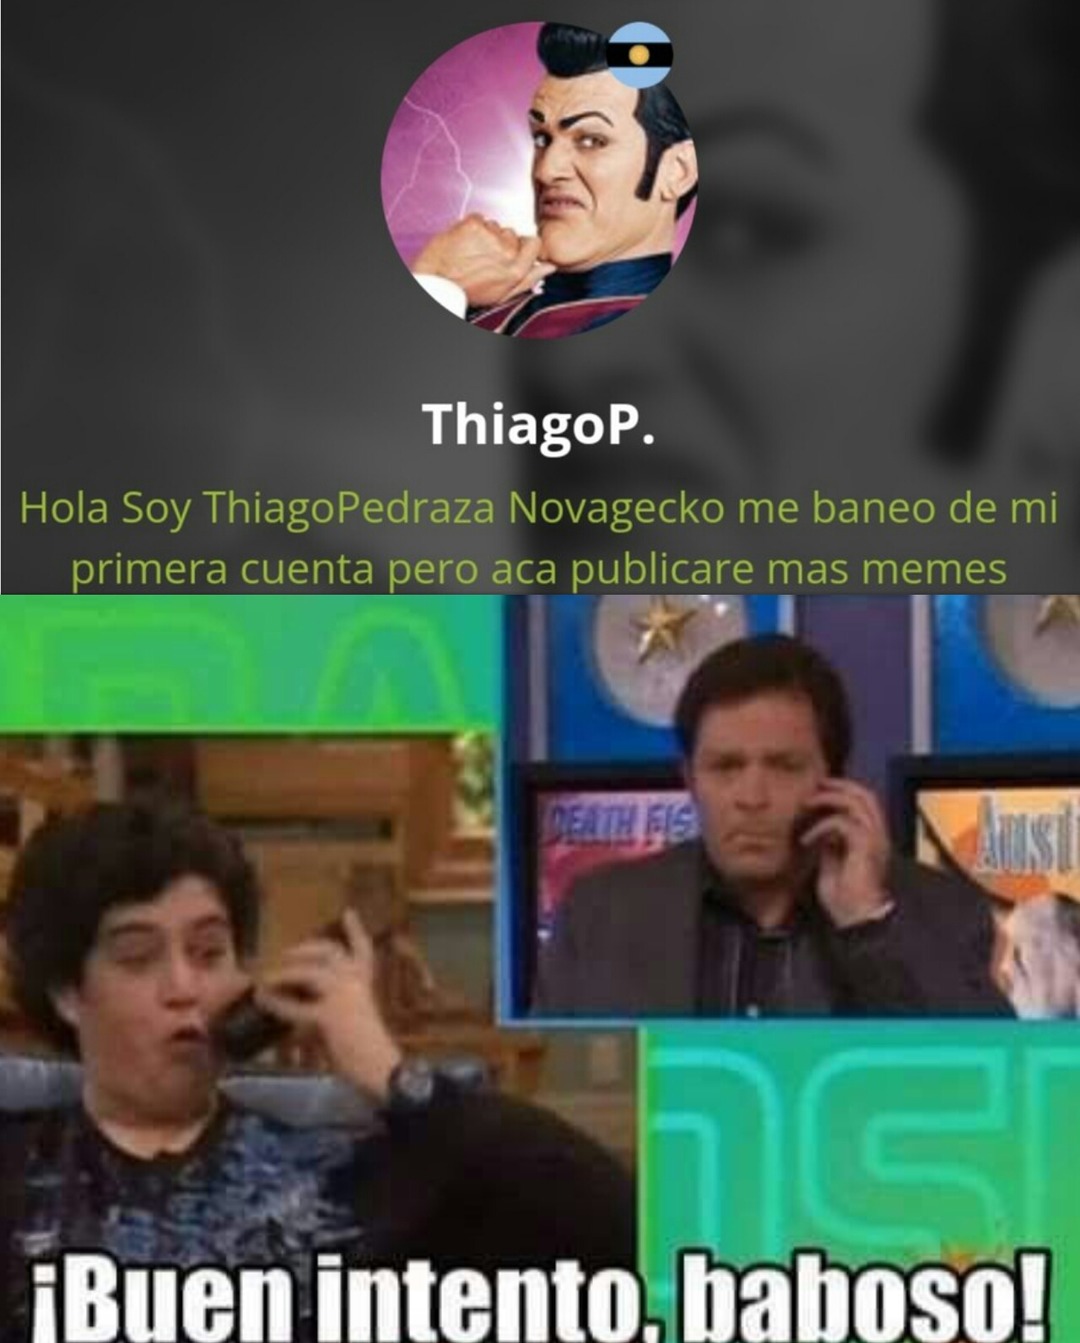 Thiagopedraza tiene nueva cuenta para subir gif mierderos - meme